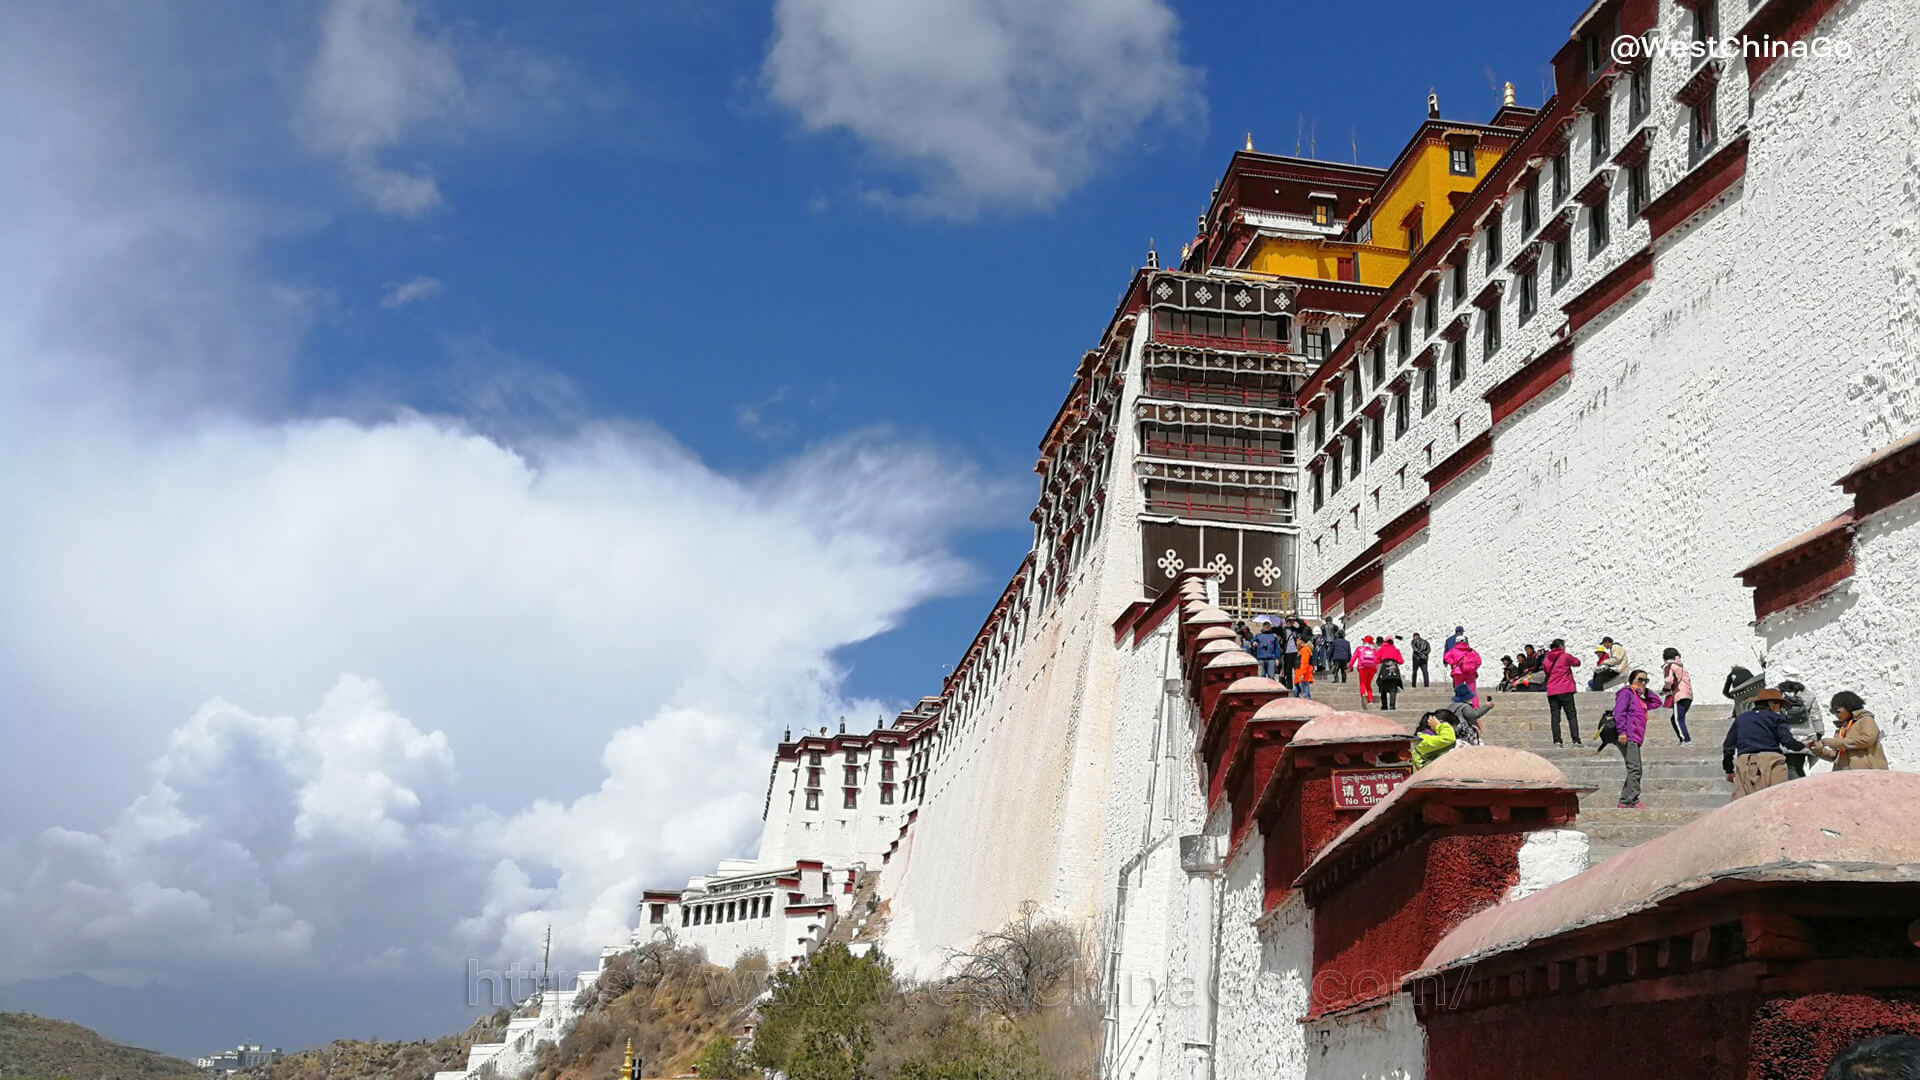 Tibet Potala Palace